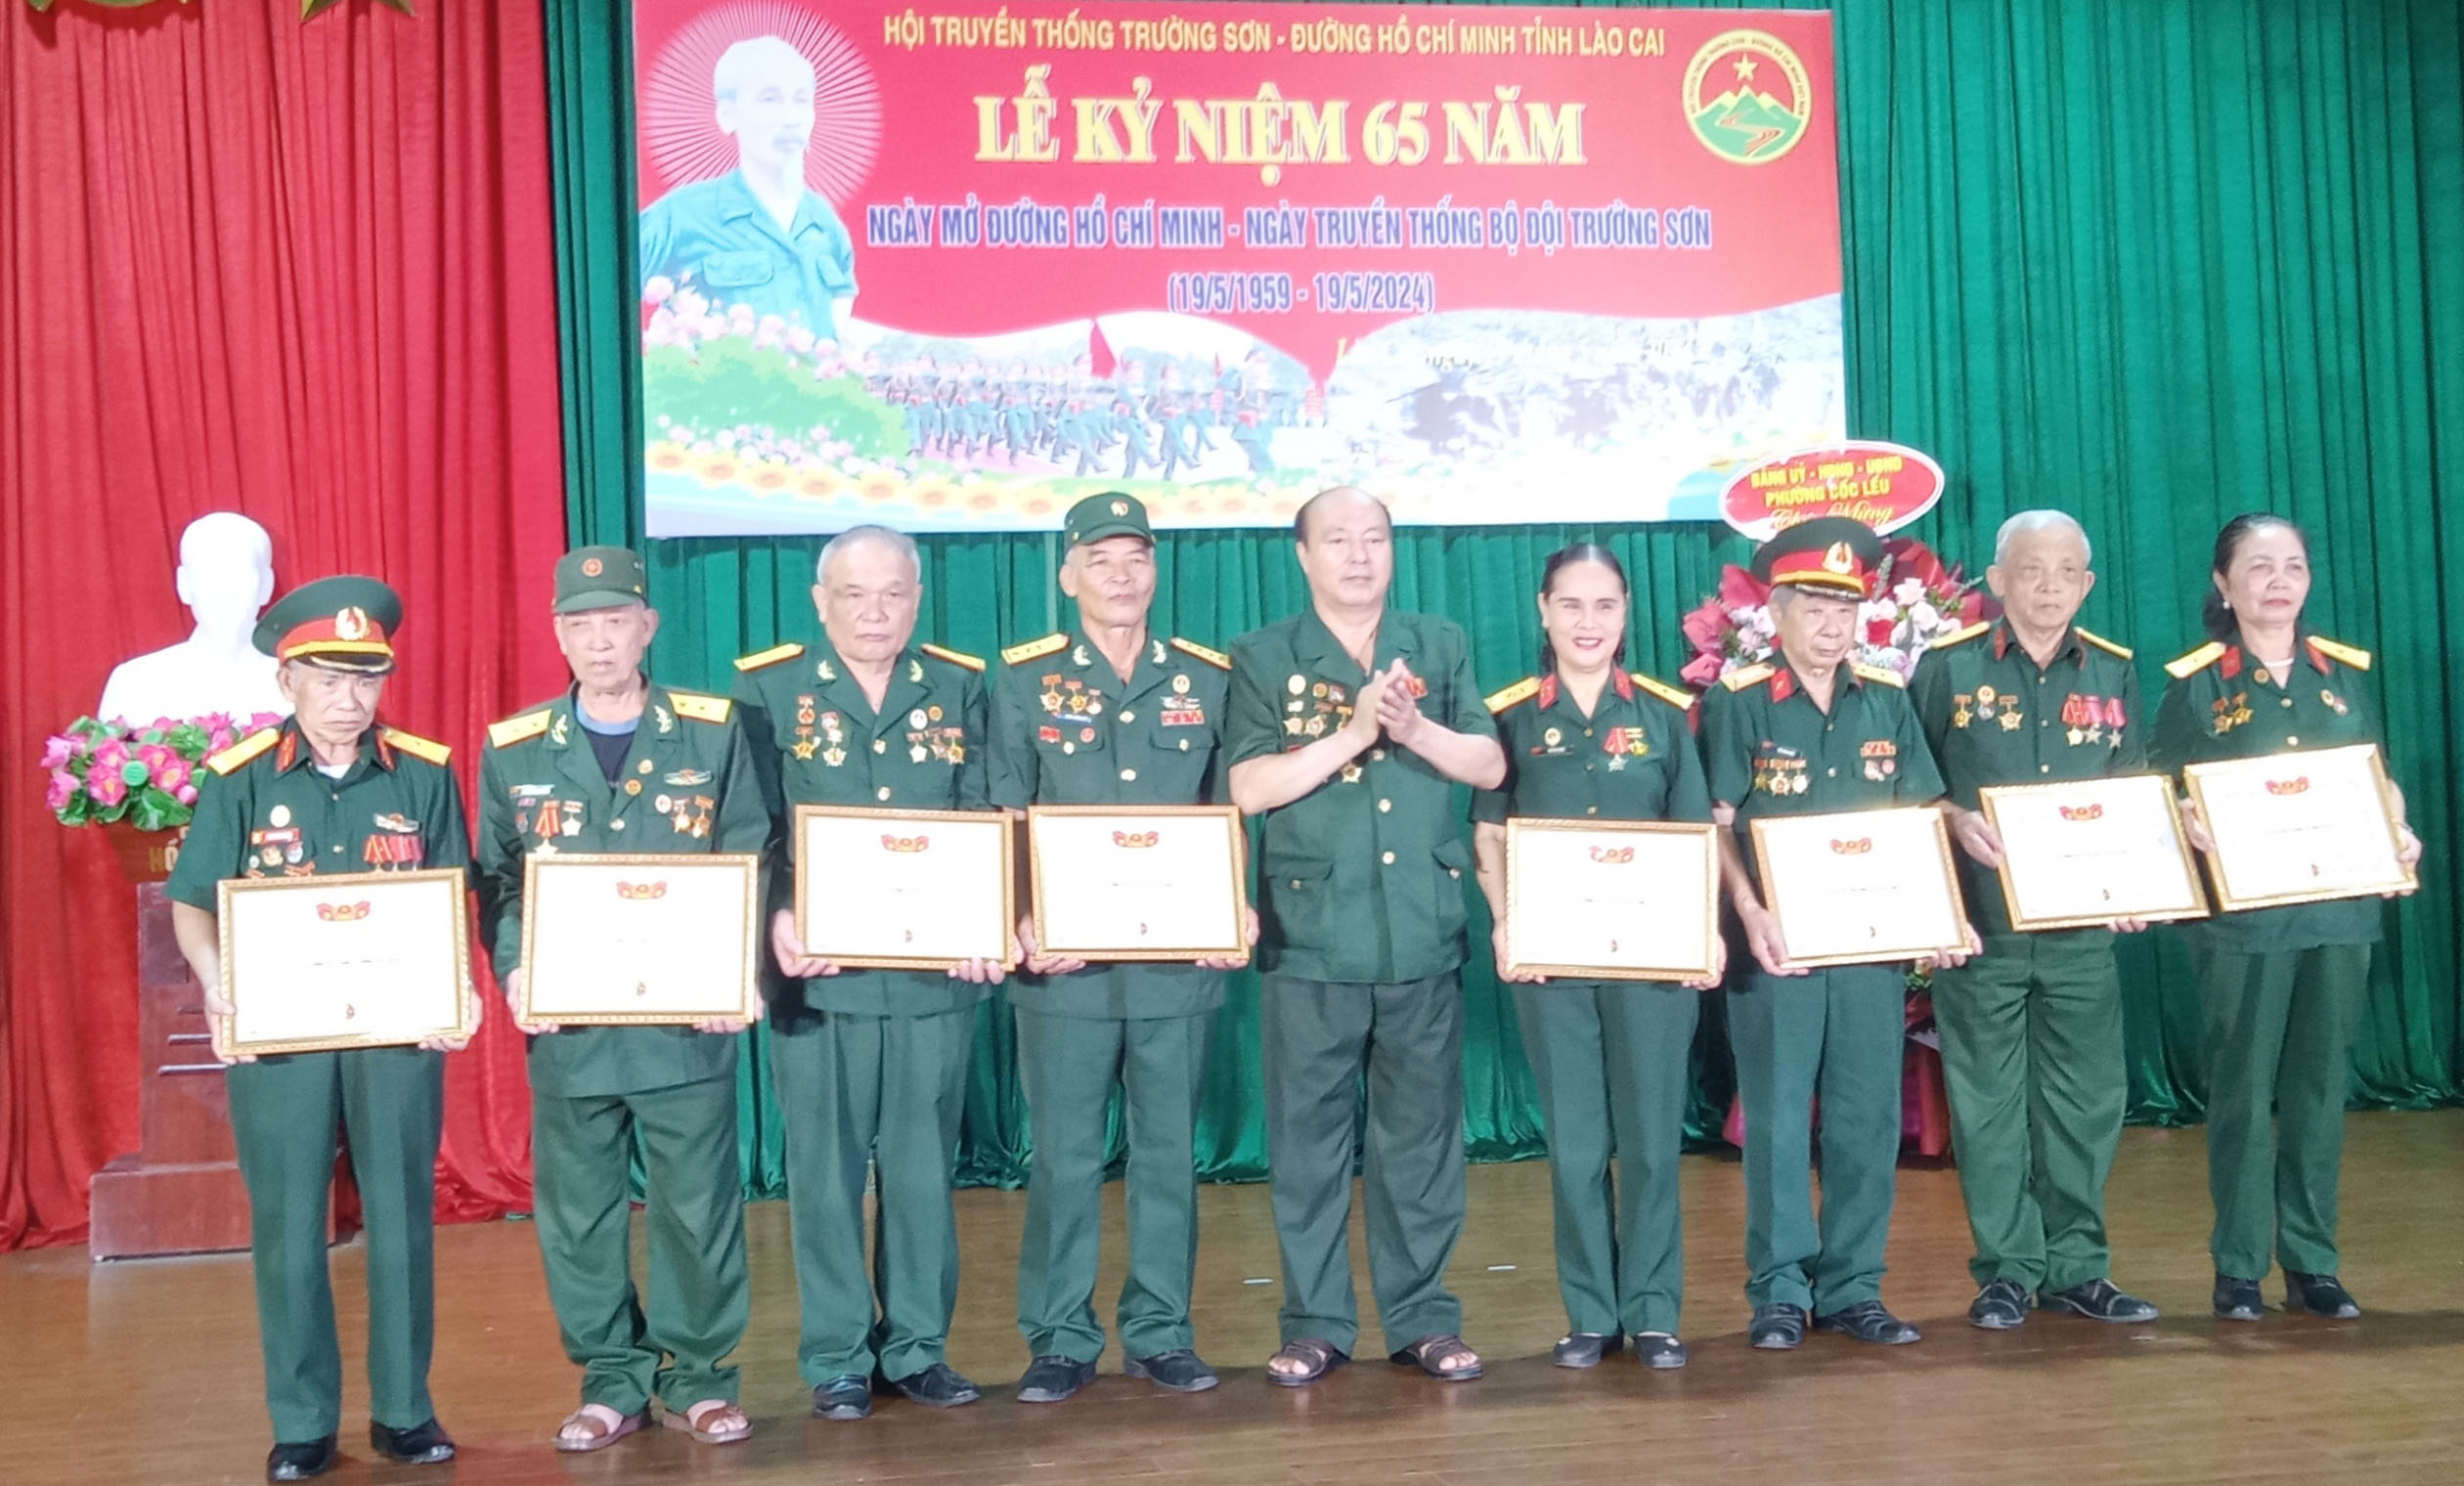 Hội Trường Sơn tỉnh Lào Cai Kỷ niệm 65 năm ngày mở đường Hồ Chí Minh - ngày Truyền thống Bộ đội Trường Sơn